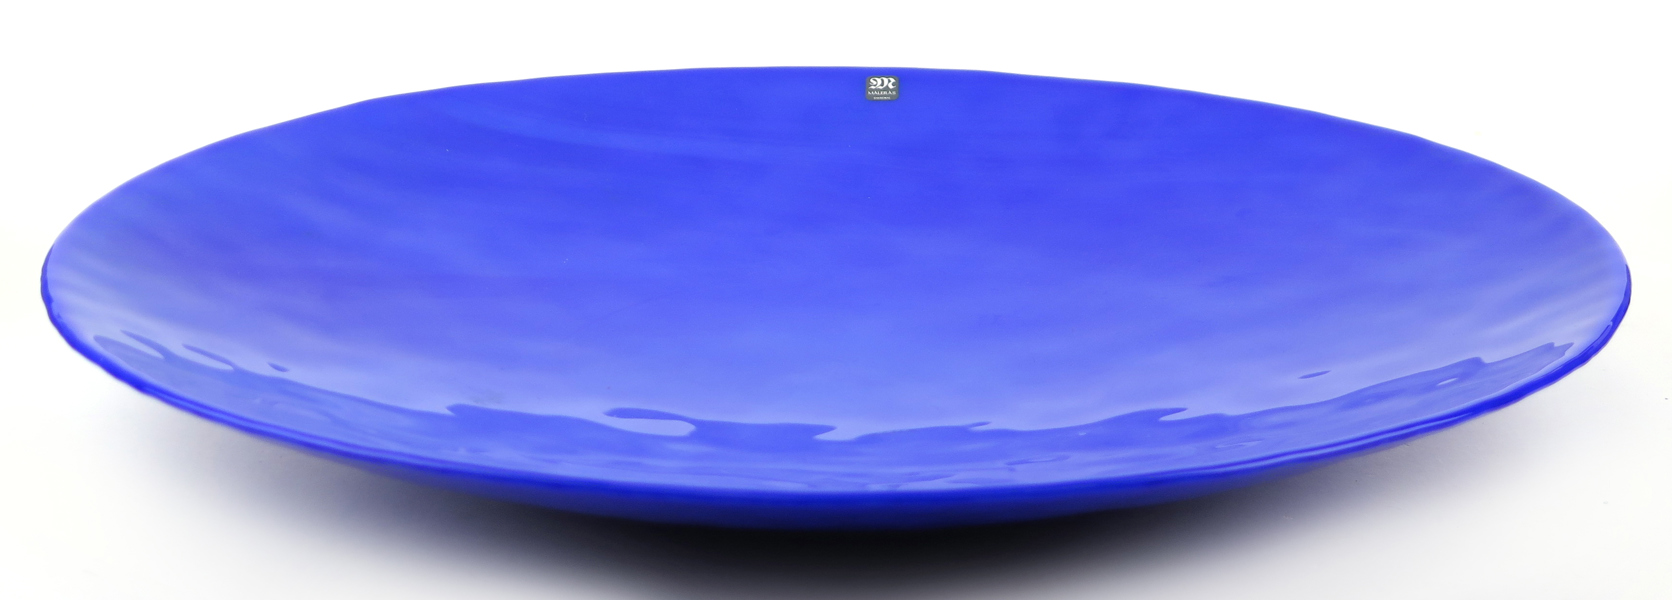 Englund, Eva för Målerås, fat, blå glasmassa, Malakit", signerat, diameter 45 cm_27168a_8db2abc8cb79782_lg.jpeg